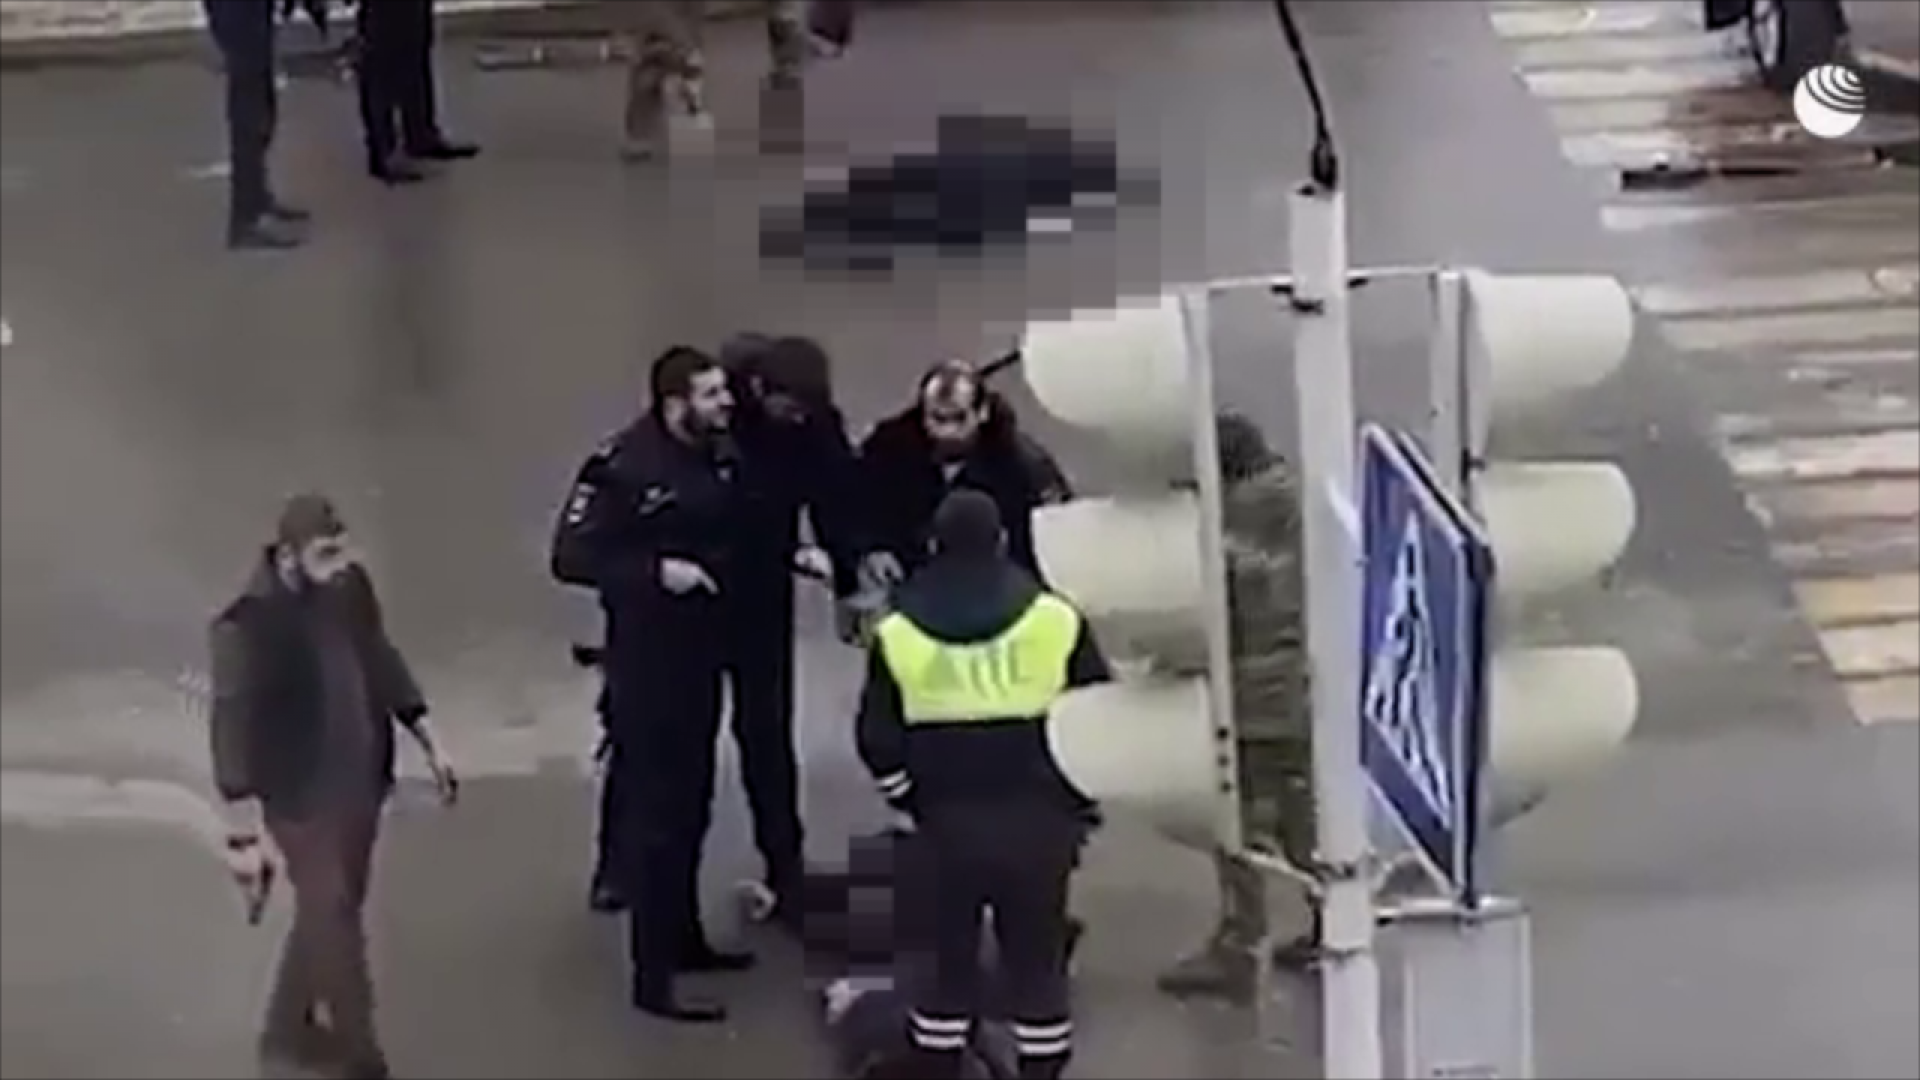 Политик нападение. Вооруженное нападение на сотрудника полиции. Нападение на полицейских в Грозном. Теракт в Грозном 2020 28 декабря.